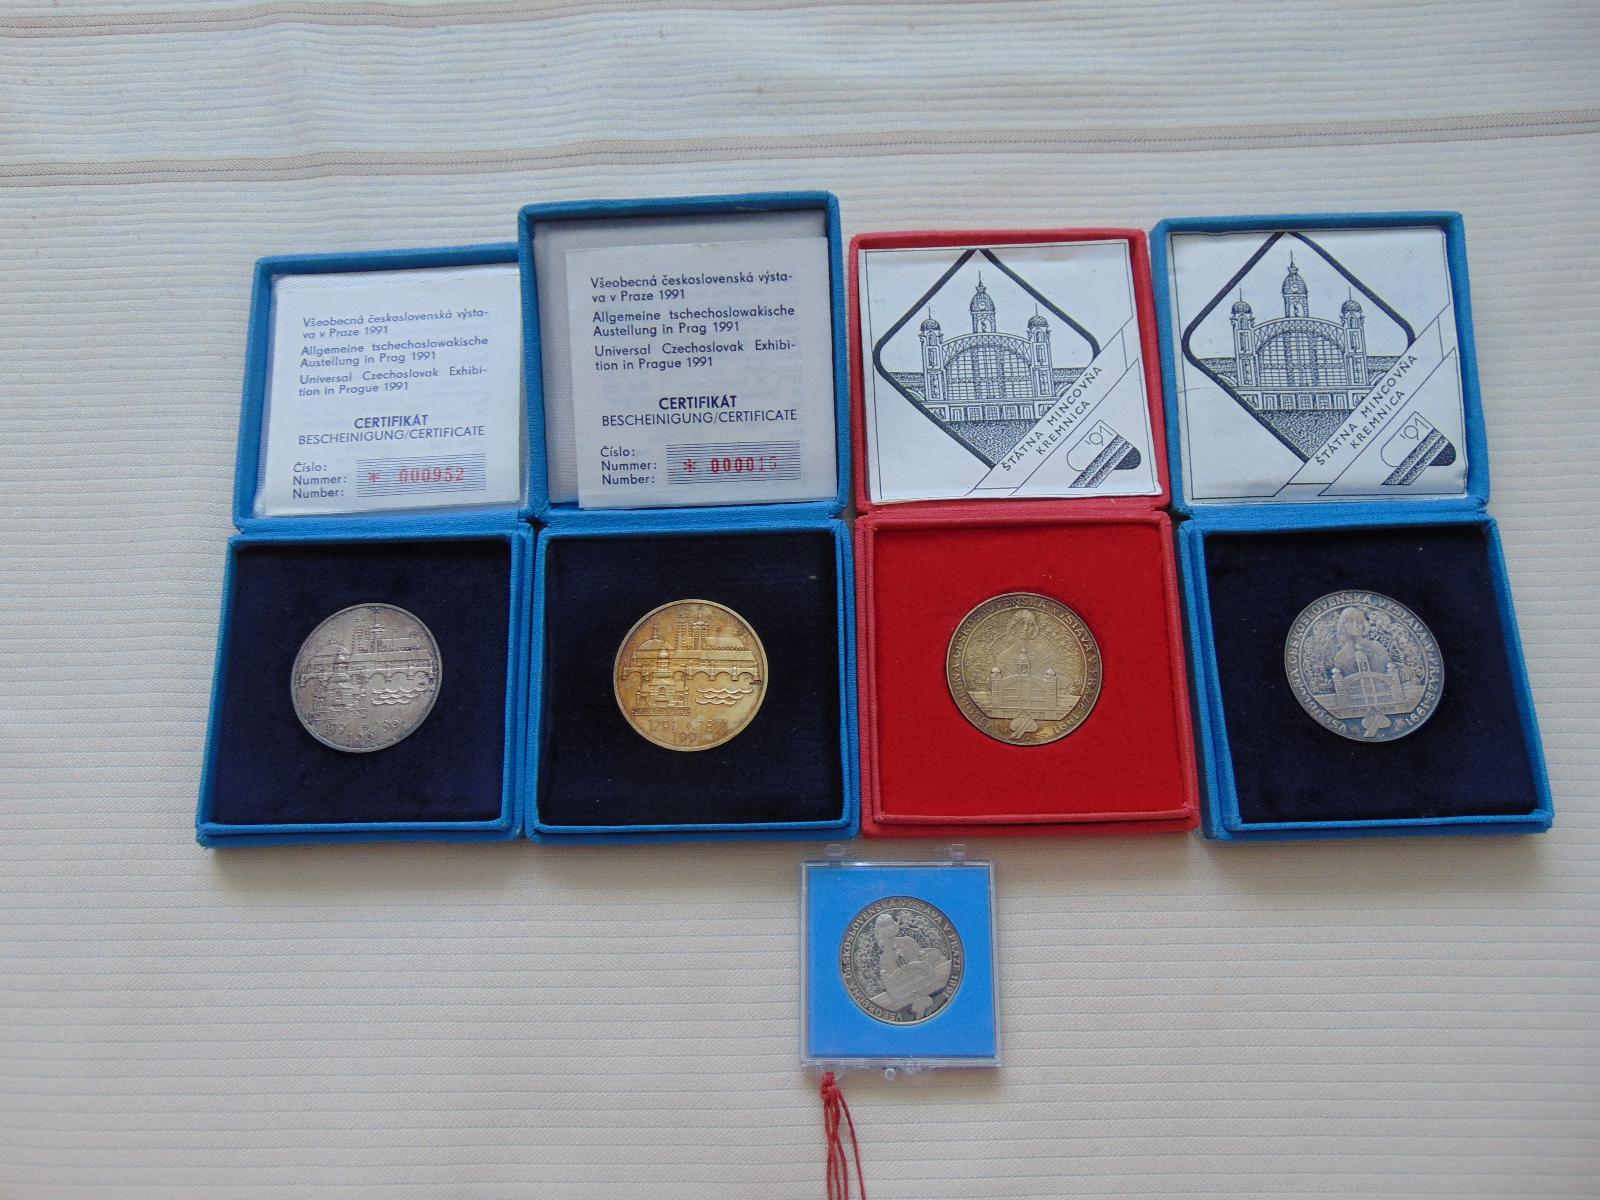 Strieborné medaily - VŠEOBECNÁ ČESKOSLOVENSKÁ VÝSTAVA V PRAHE 1991 - Numizmatika